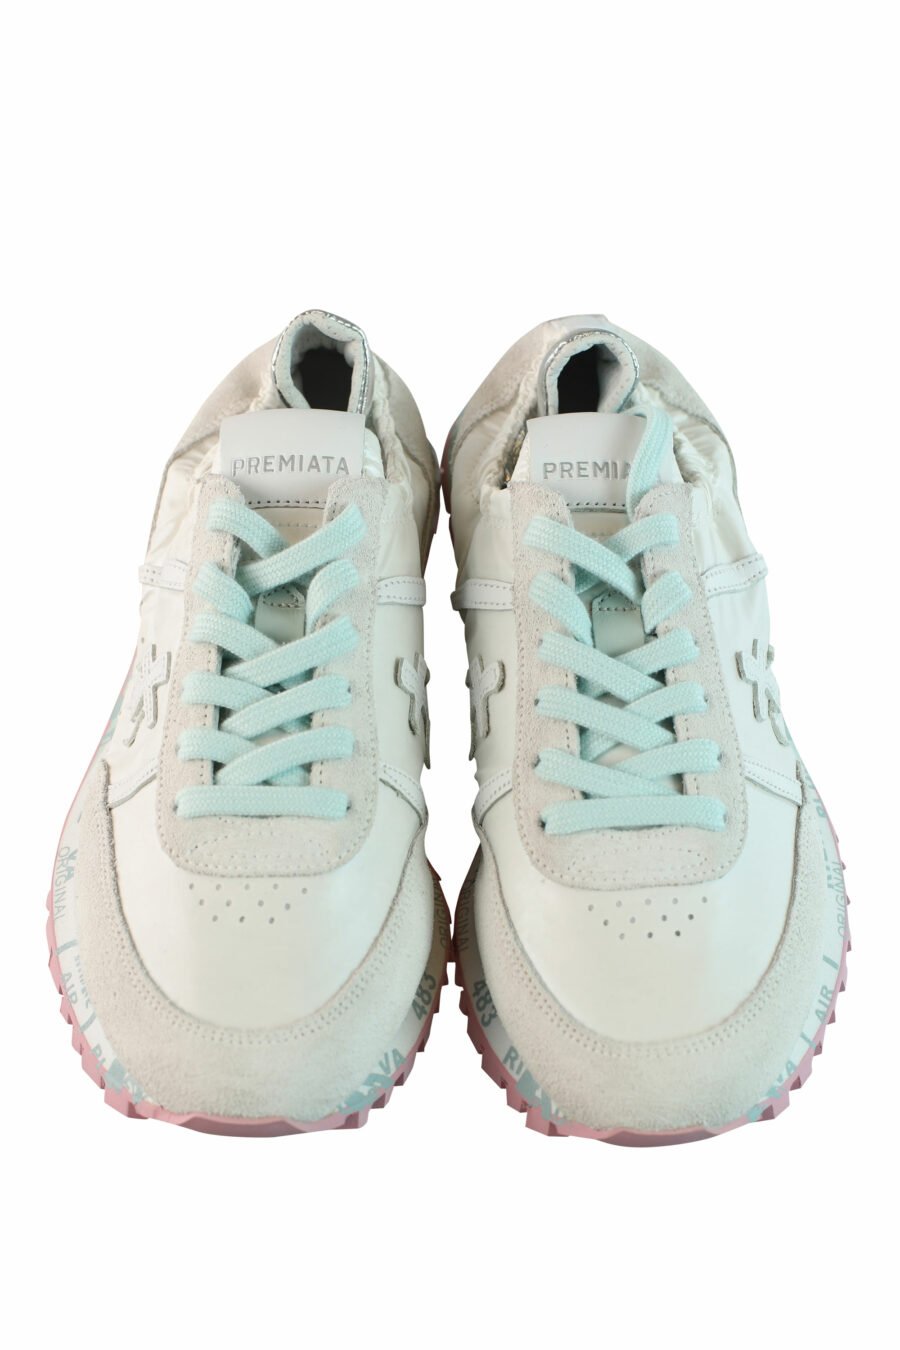 Zapatillas blancas con elástico "sean-d 6251" - IMG 0842